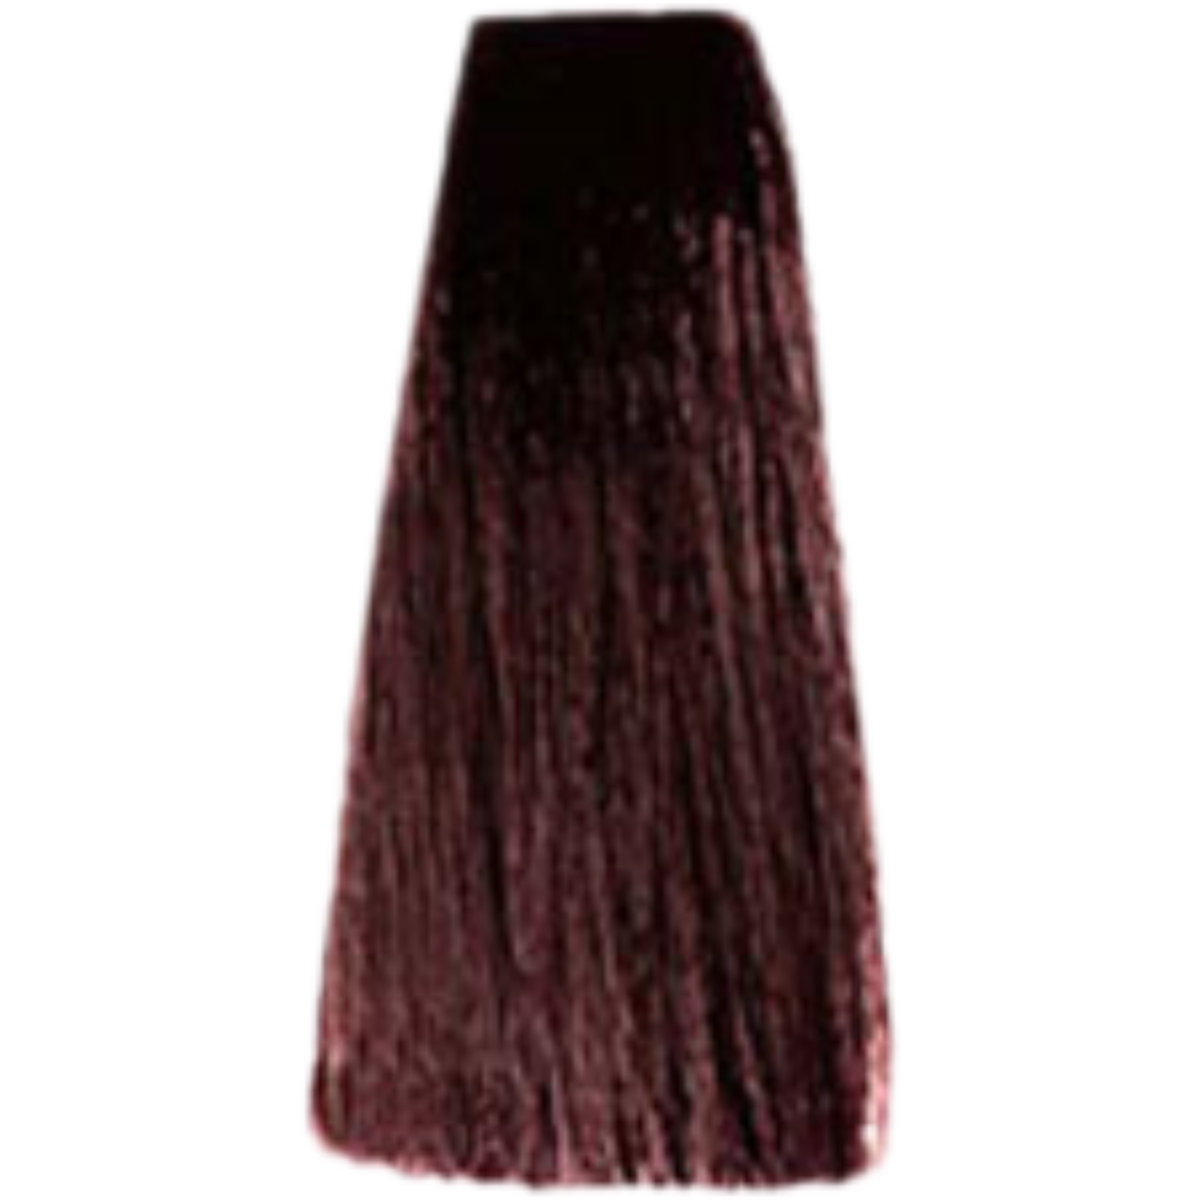 צבע שיער 4.5 MAHOGANY BROWN פארמויטה FarmaVita צבע לשיער 100 גרם